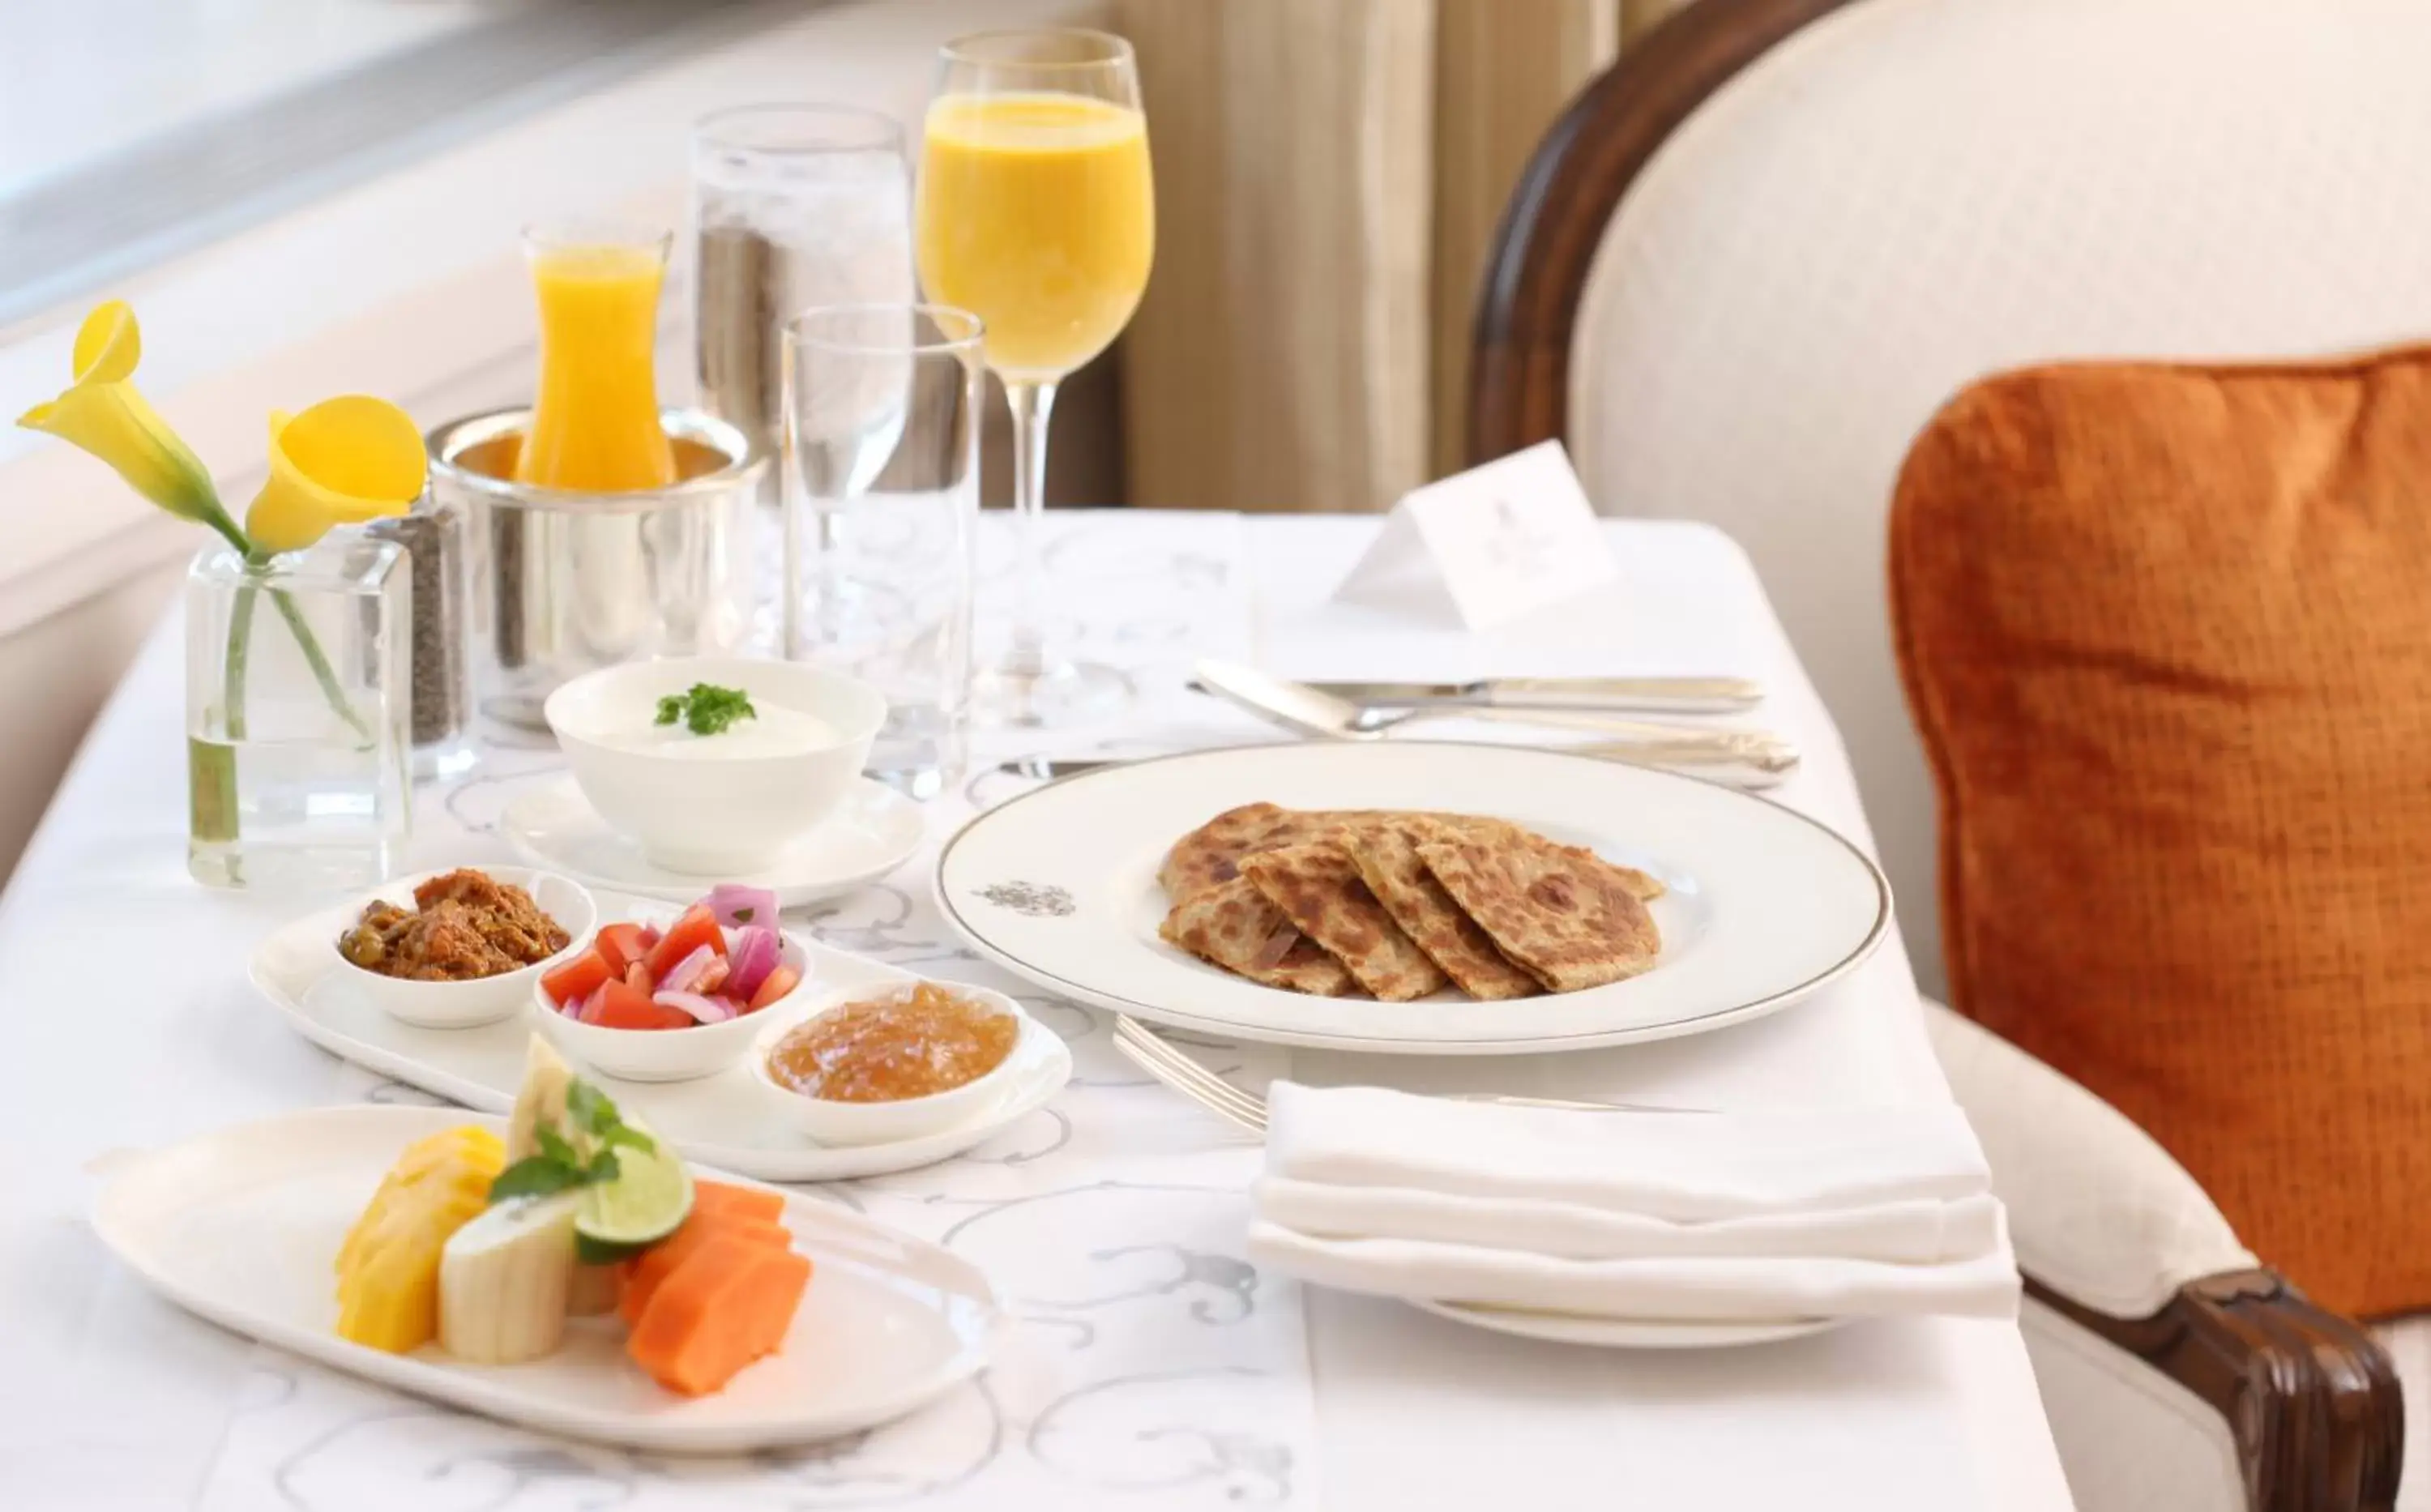 Breakfast in The Pierre, A Taj Hotel, New York